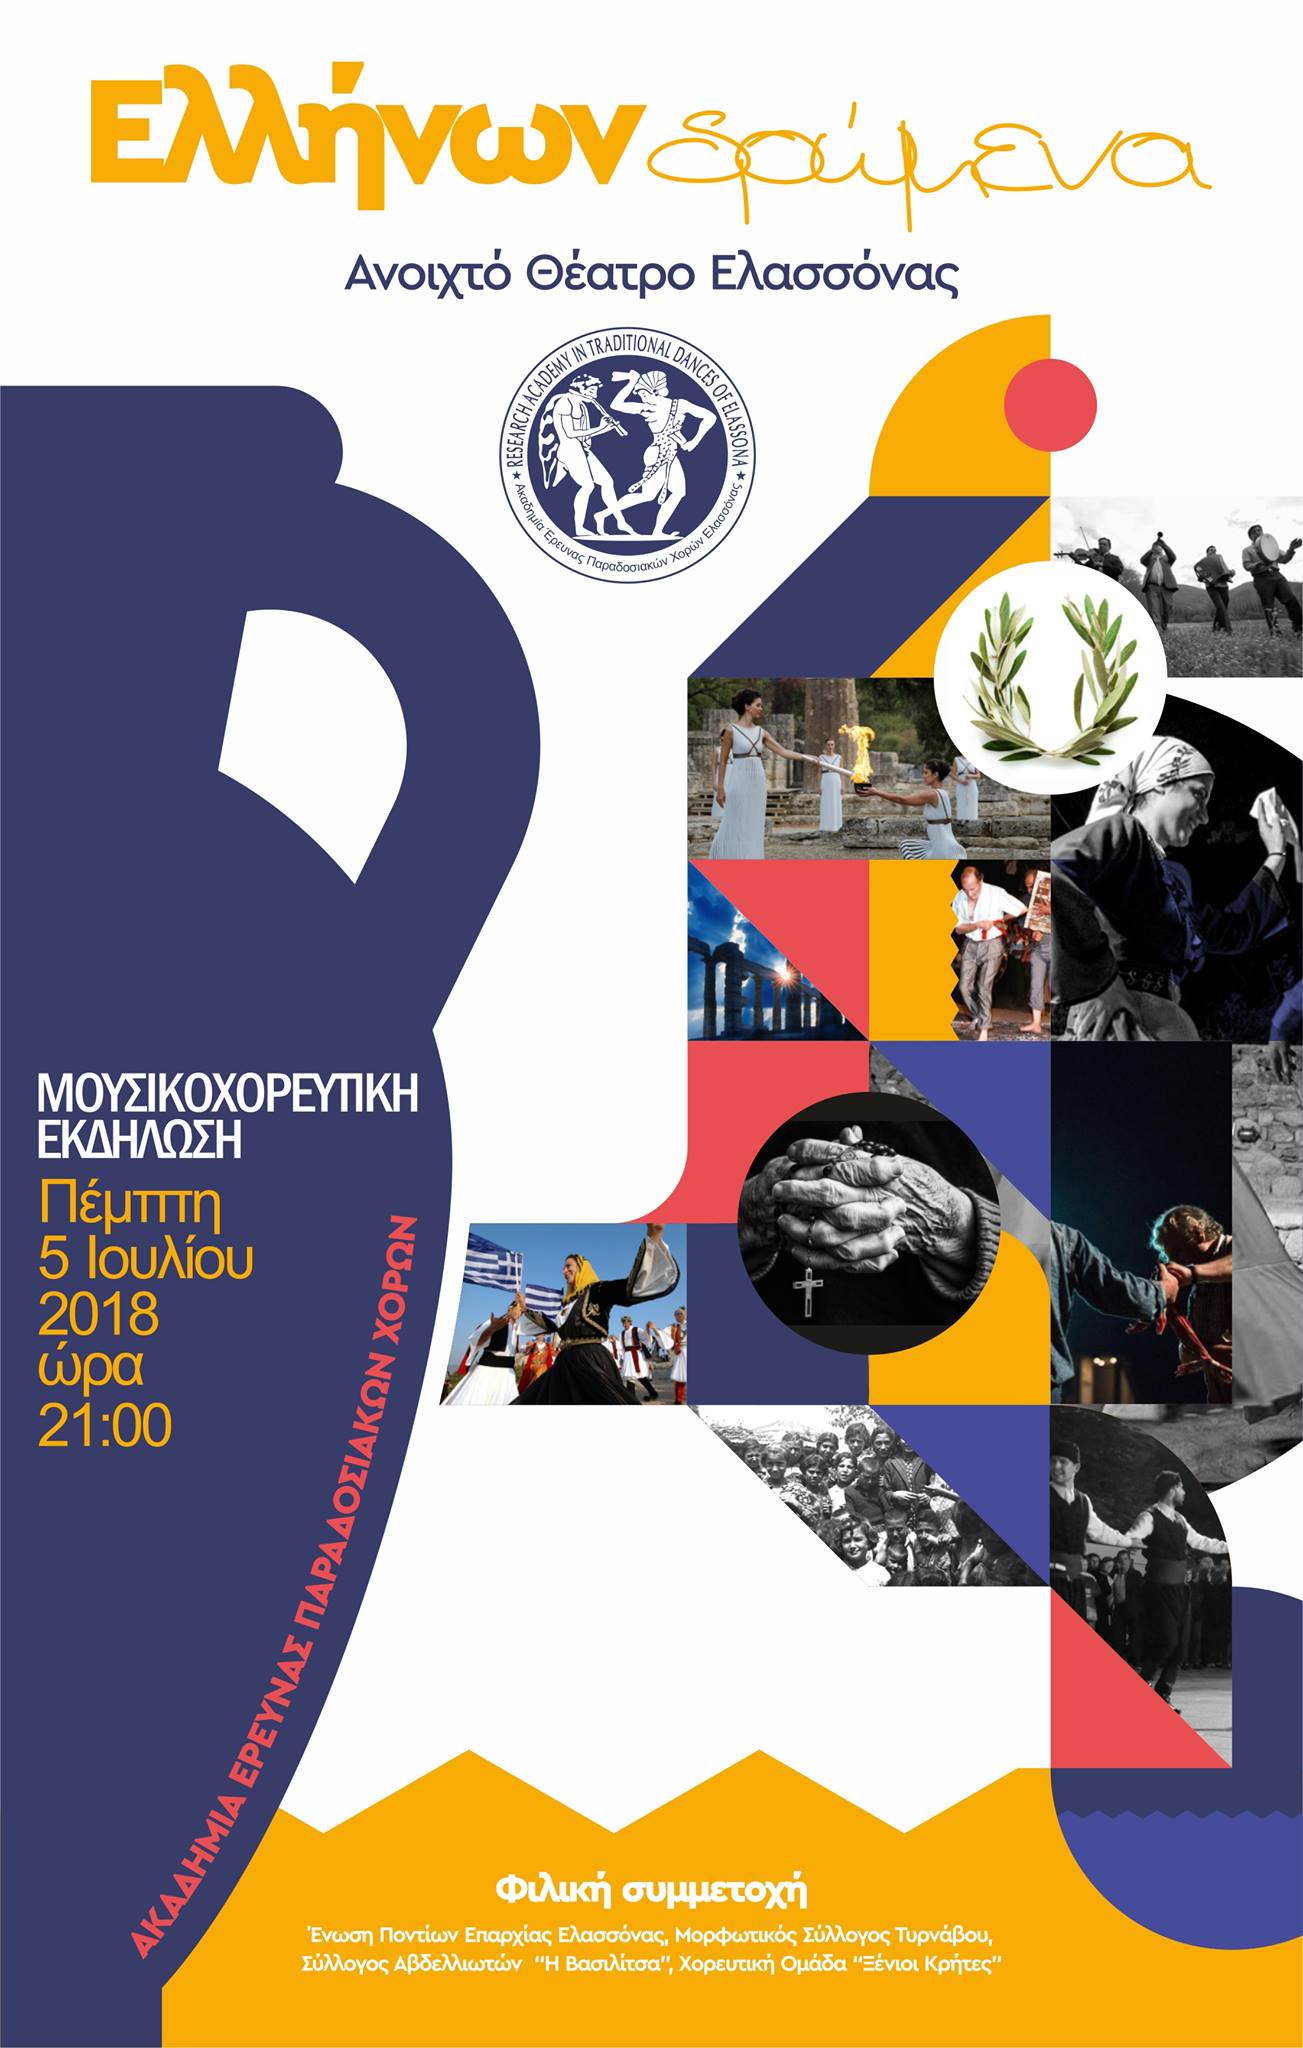 Η μουσικοχορευτική εκδήλωση «Ελλήνων Δρώμενα» τον Ιούλιο στην Ελασσόνα